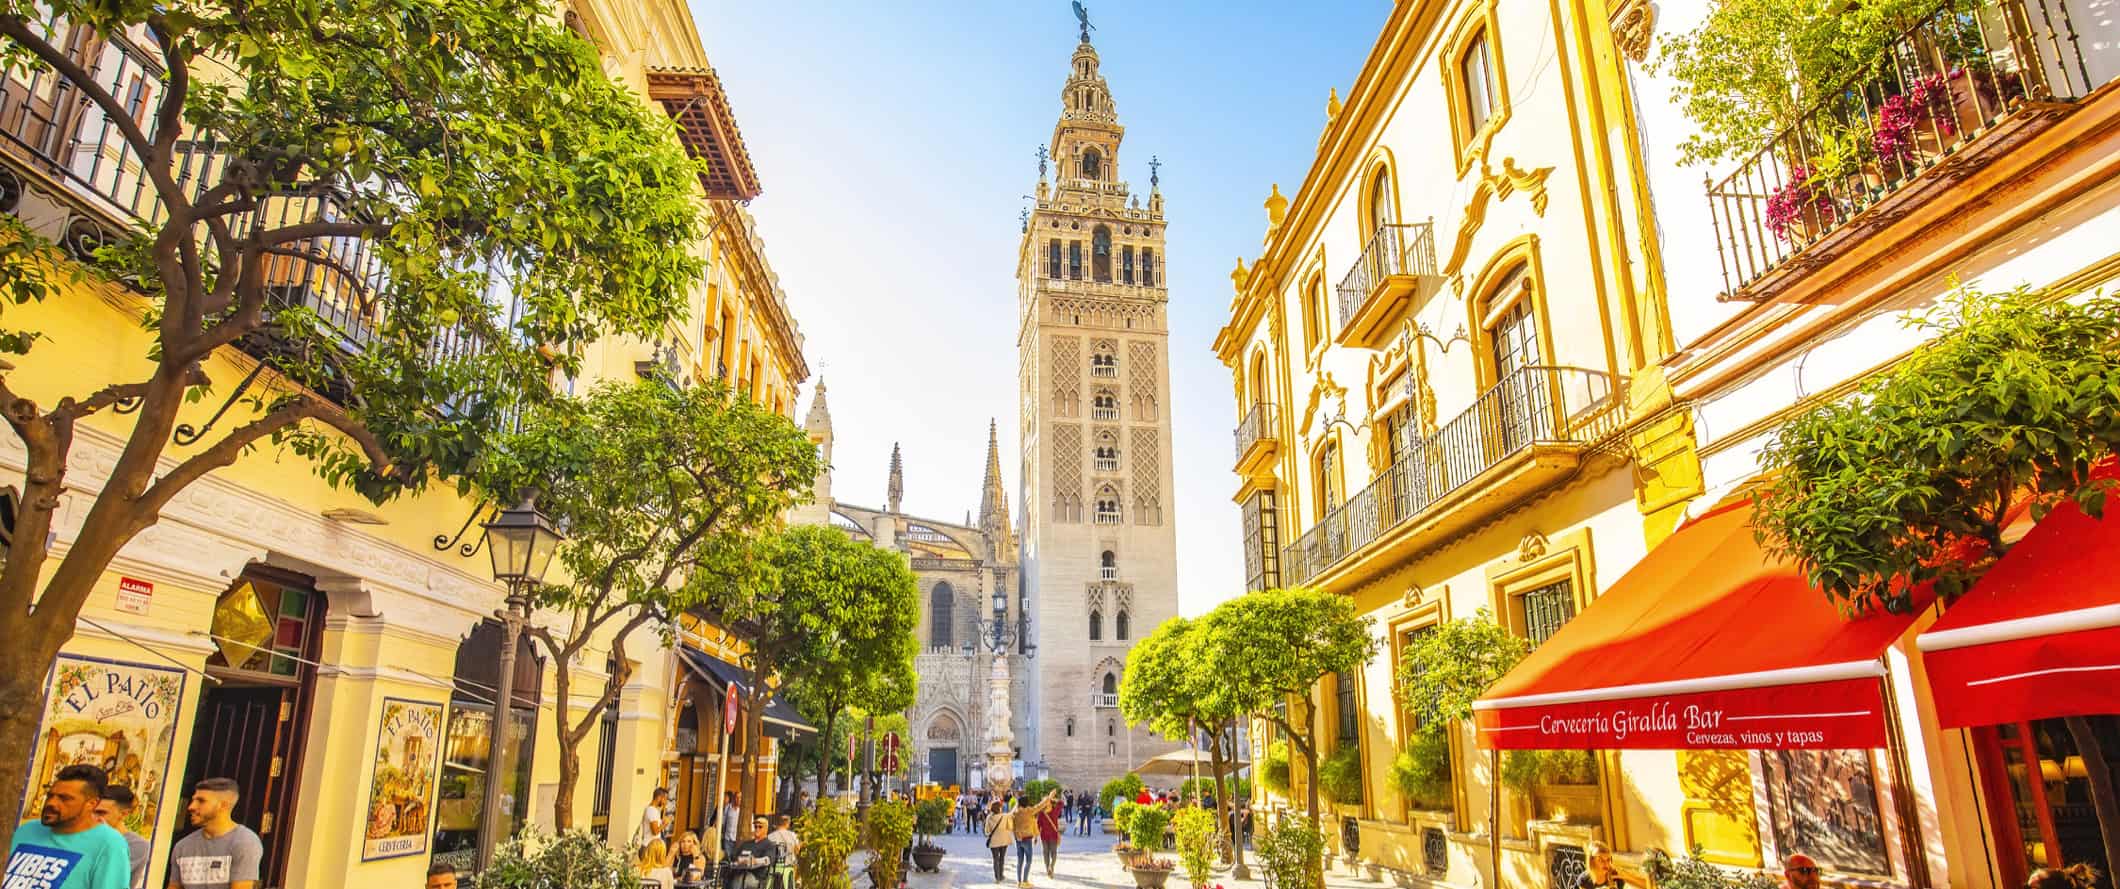 Ruas históricas encantadoras de Sunny Sevilha, Espanha.